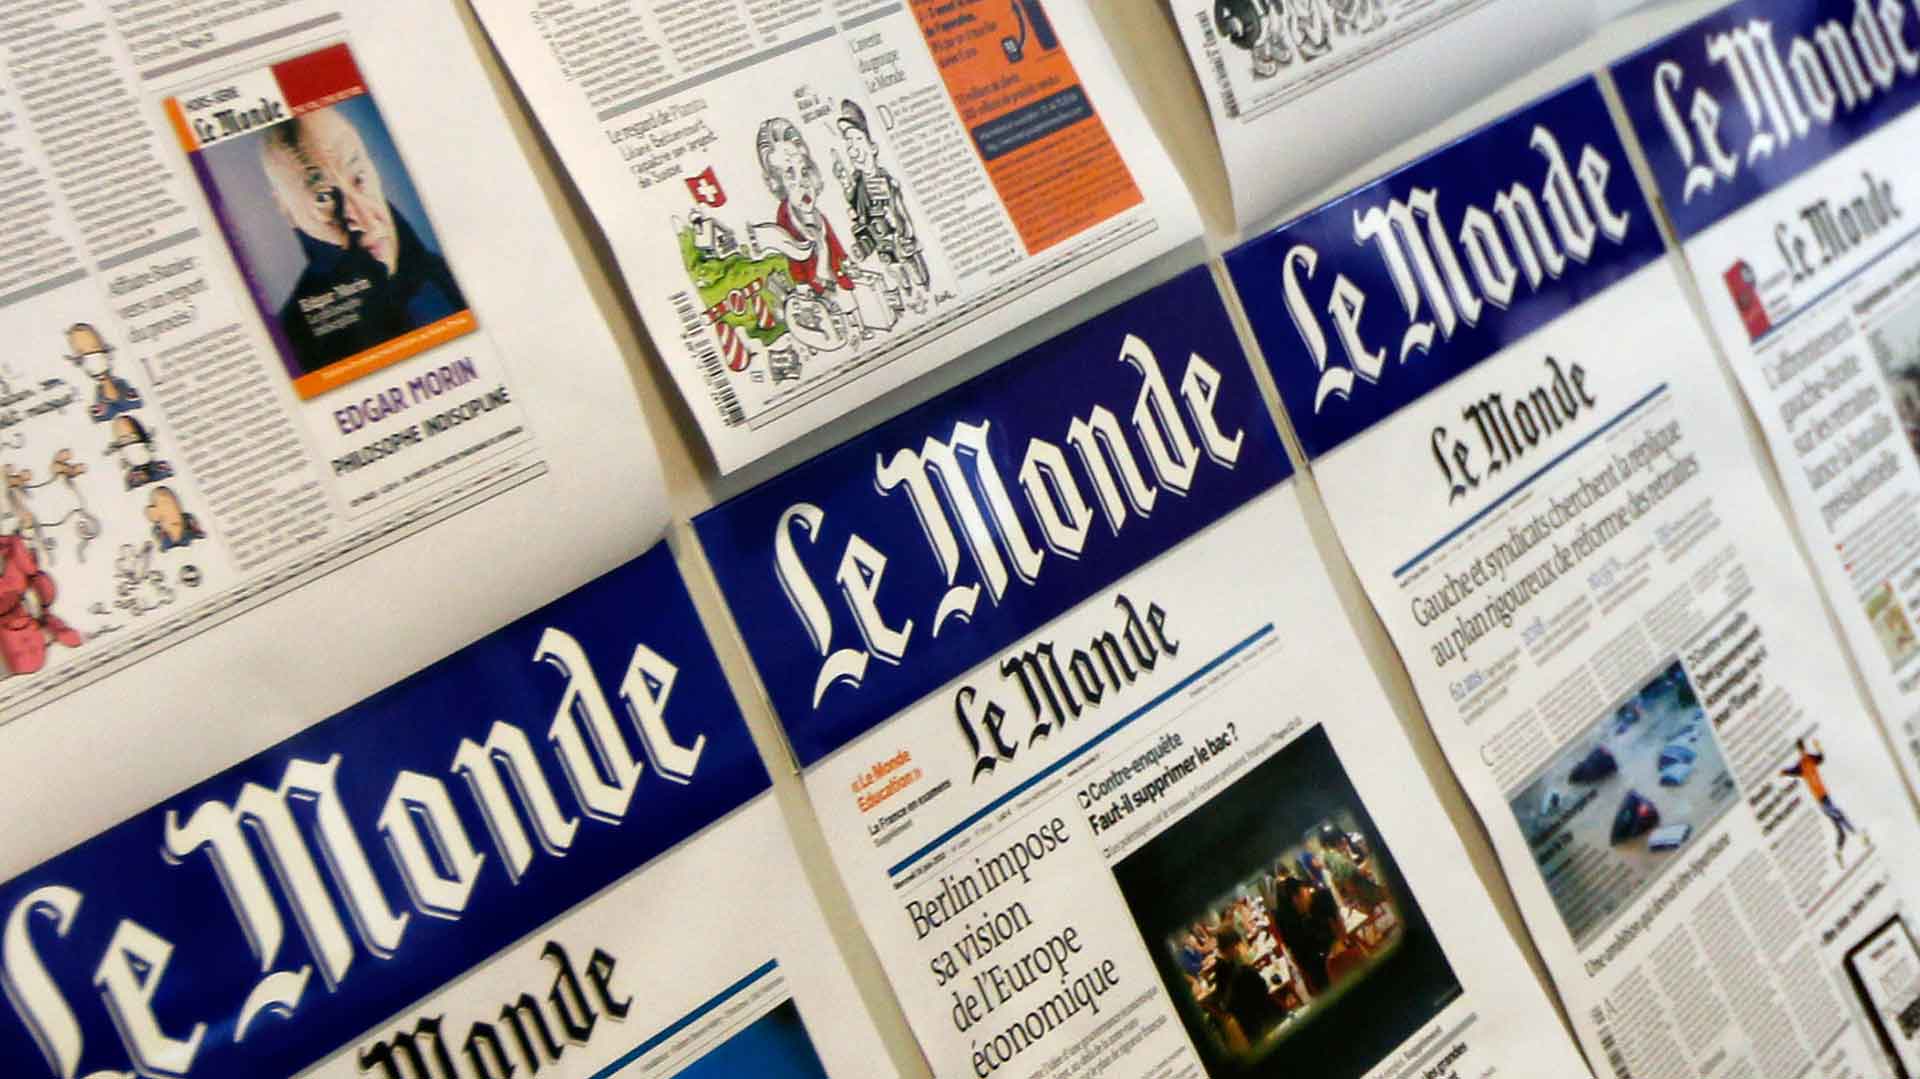 Una periodista de ‘Le Monde’ dice que el PDeCAT le ofreció publicidad a cambio de hablar bien del procés